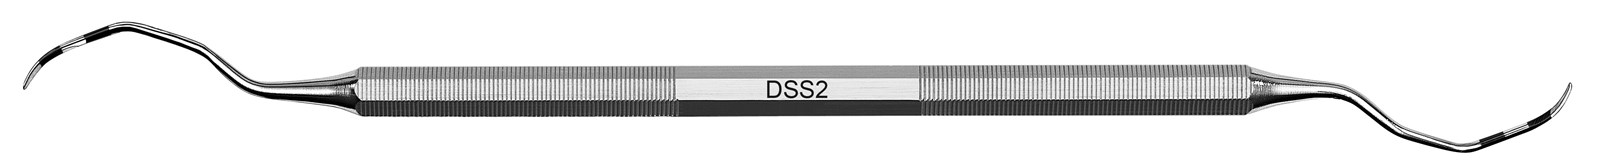 Kyreta Deppeler smart scaling (DSS) - DSS2, ADEP šedý